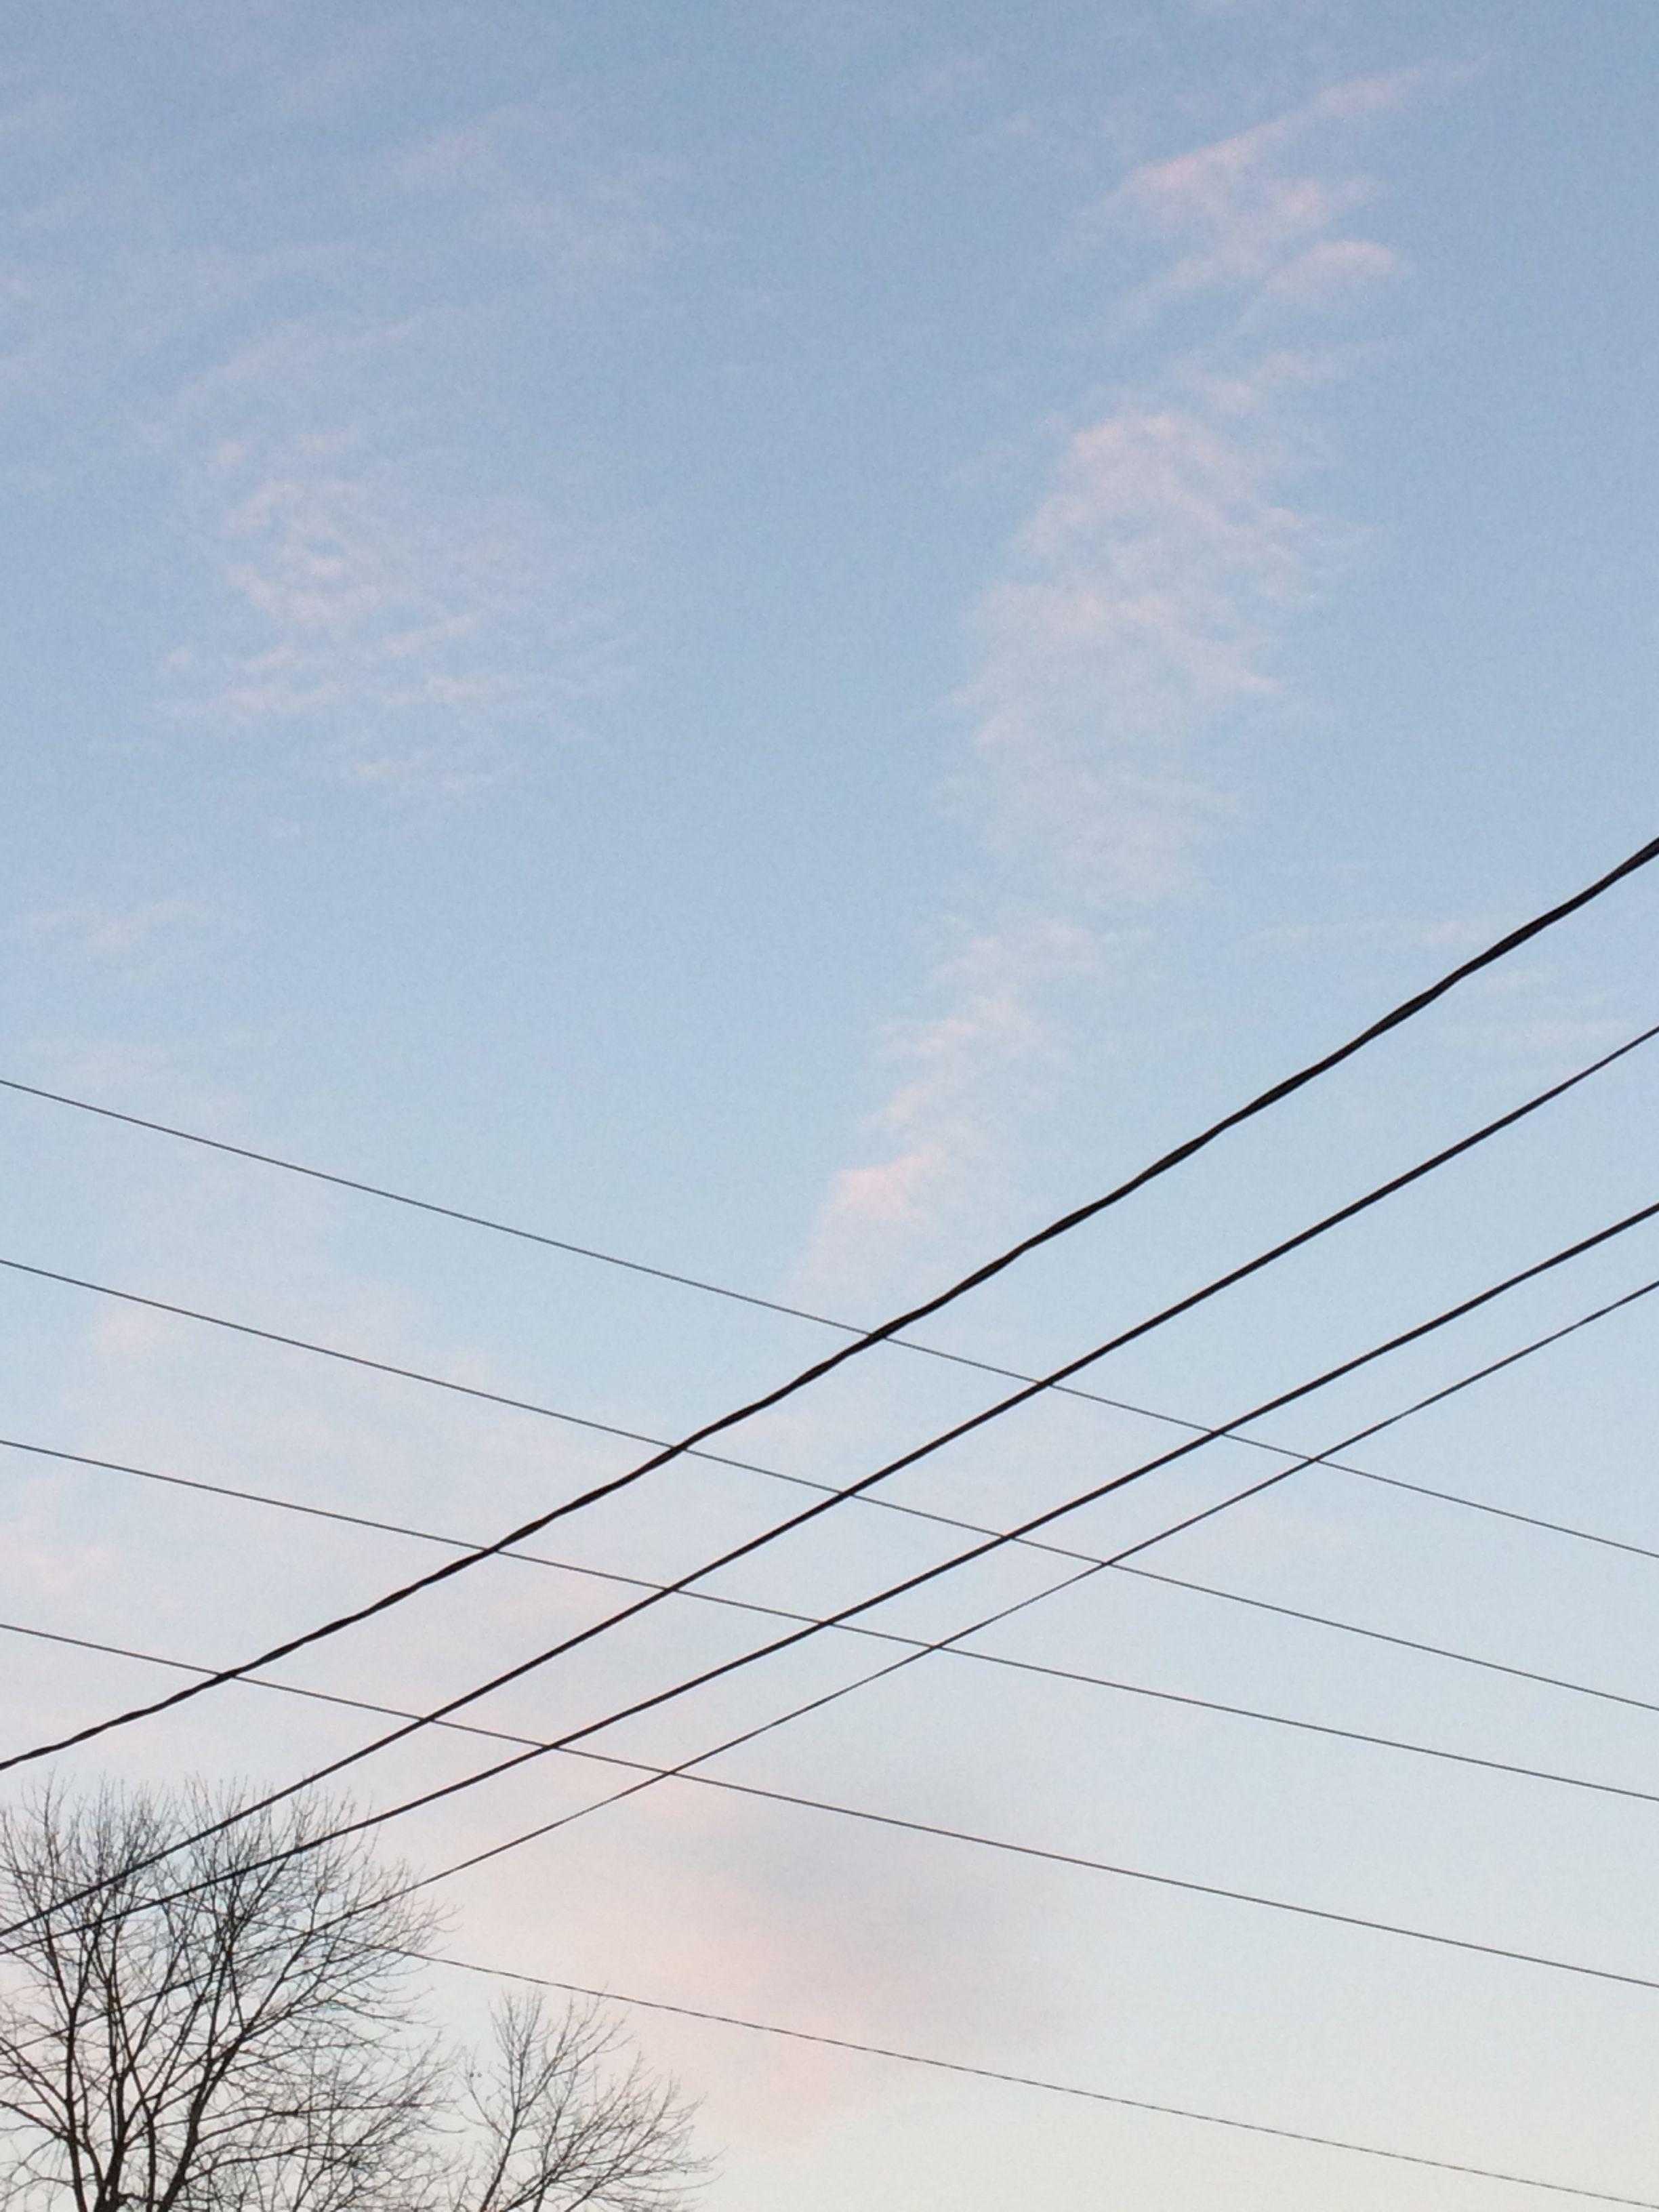 Sky and power cord aesthetic. ᴇʏᴇ ᴄᴀɴᴅʏ. Sky